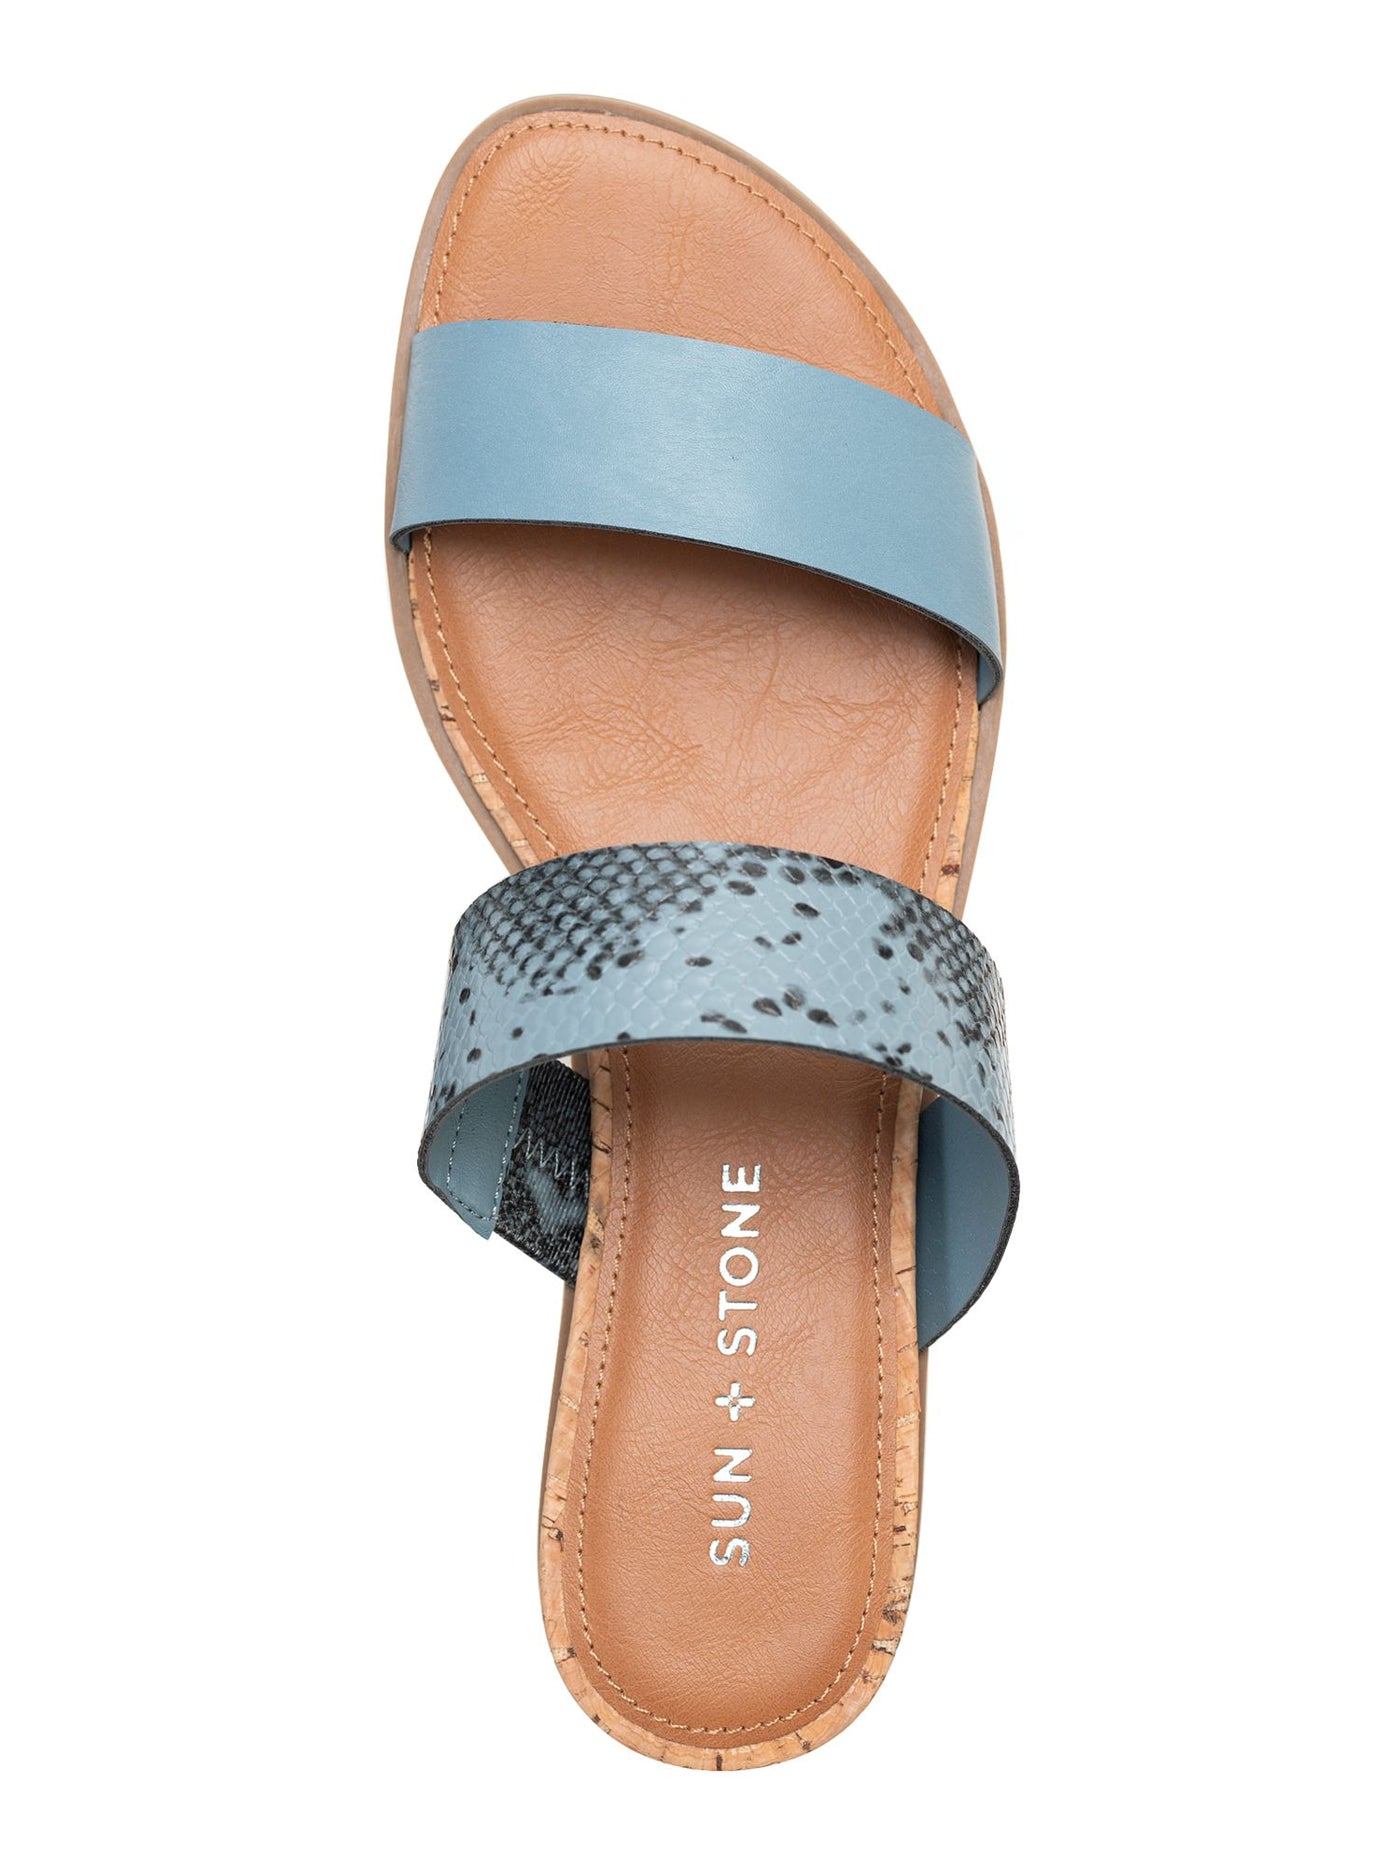 SUN STONE Womens Light Blue Snakeskin Cushioned Slip Resistant Easten Round Toe Wedge Slip On Slide Sandals Shoes 7.5 W